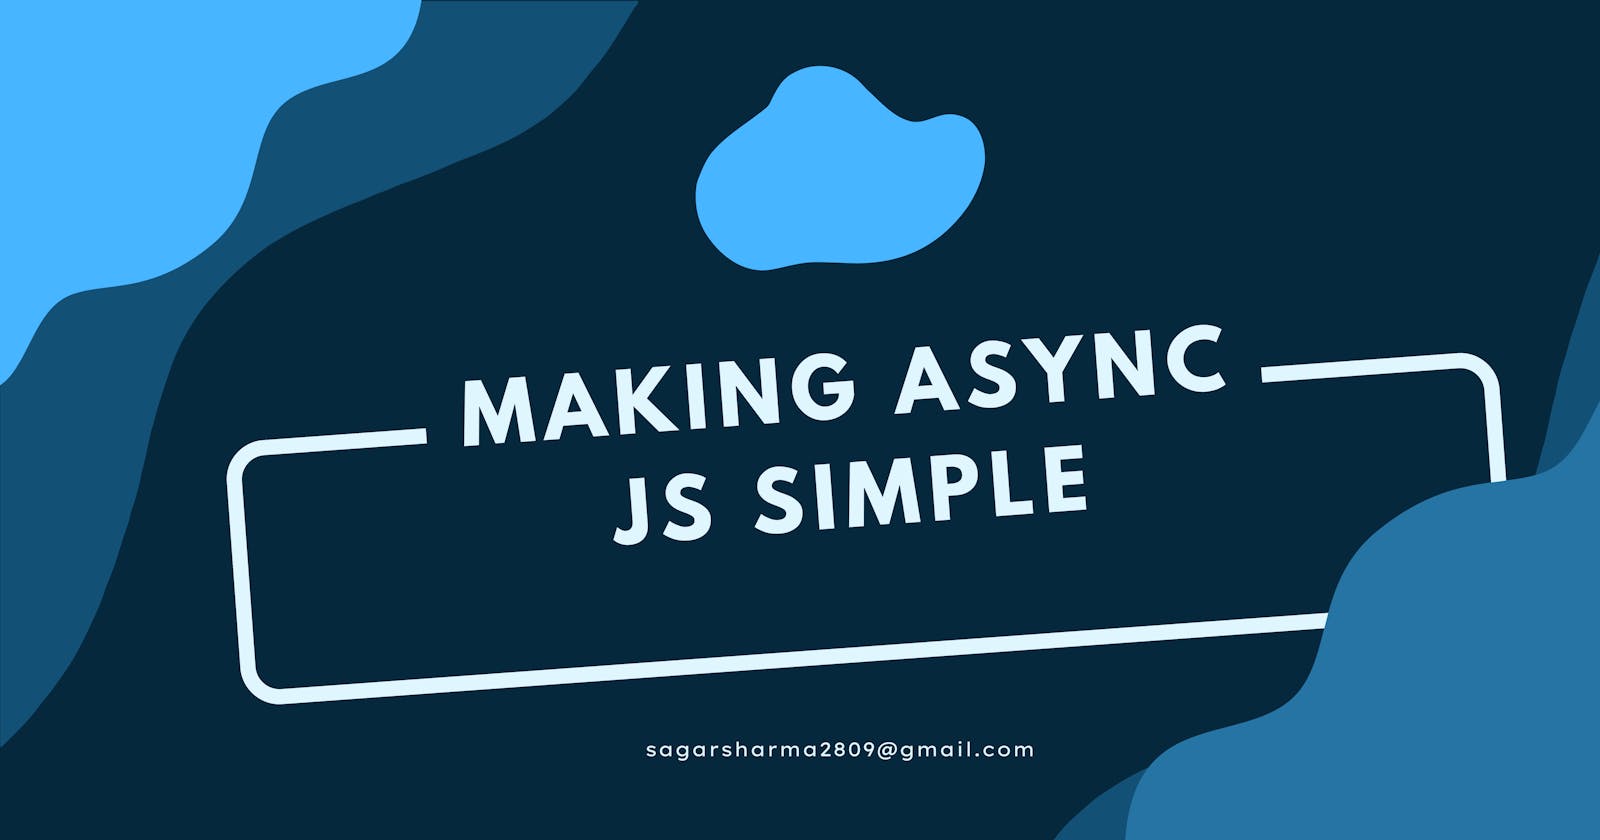 Basics of Asynchronous JS